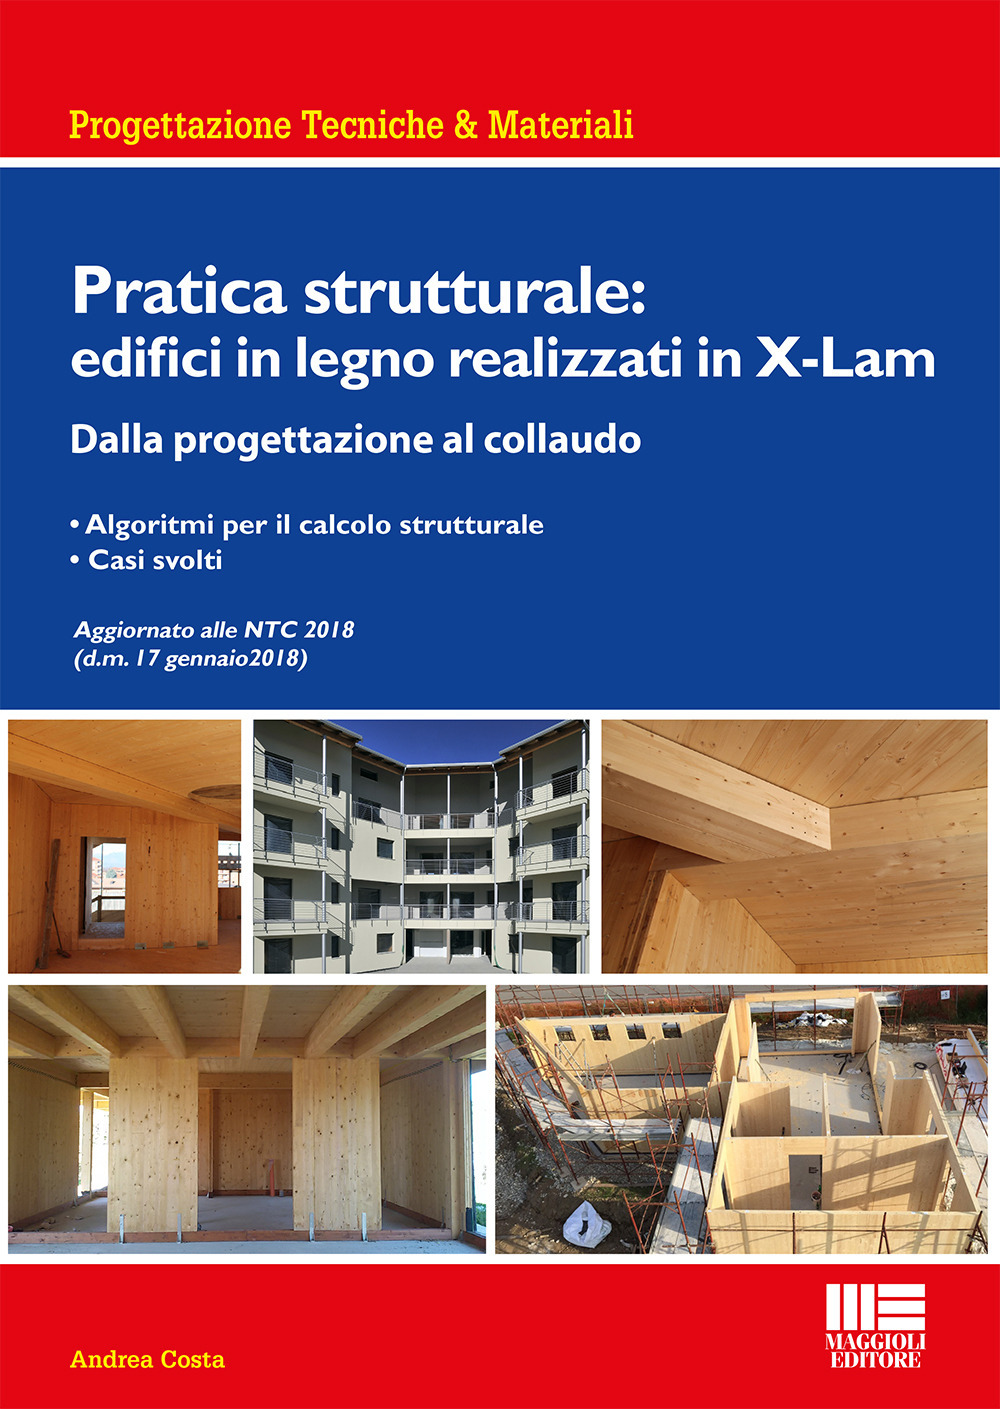 Libri Andrea Costa - Pratica Strutturale: Edifici In Legno Realizzati Con X-LAM NUOVO SIGILLATO, EDIZIONE DEL 30/04/2018 SUBITO DISPONIBILE